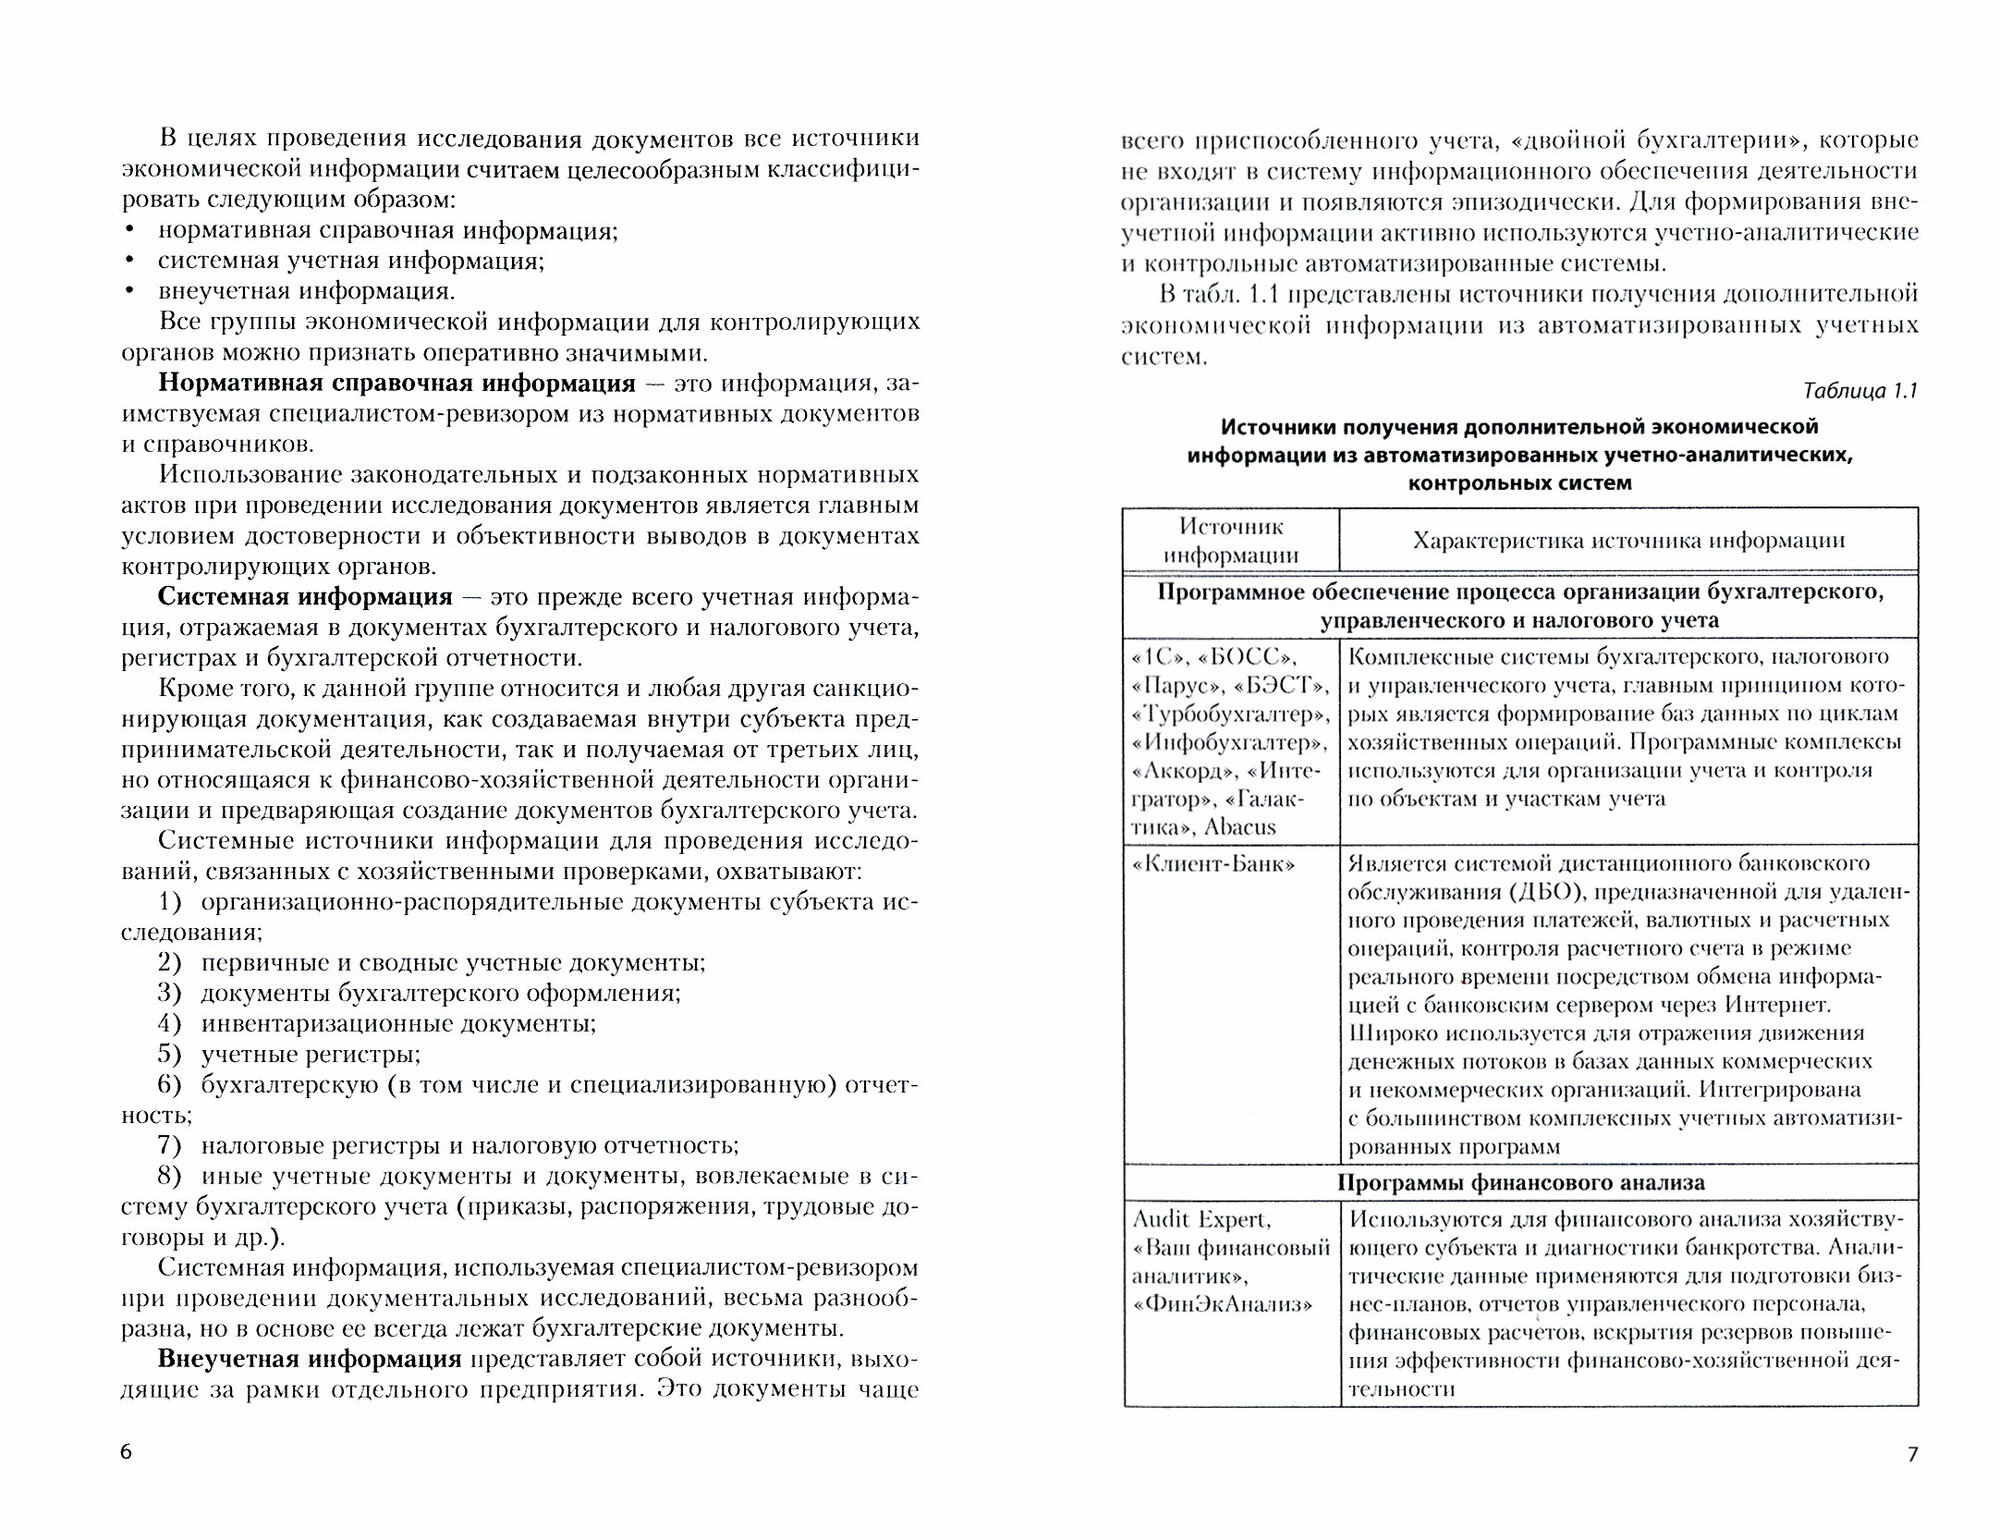 Ревизионные и экспертно-аналитические методы выявления нарушений в учете и отчетности организаций - фото №2